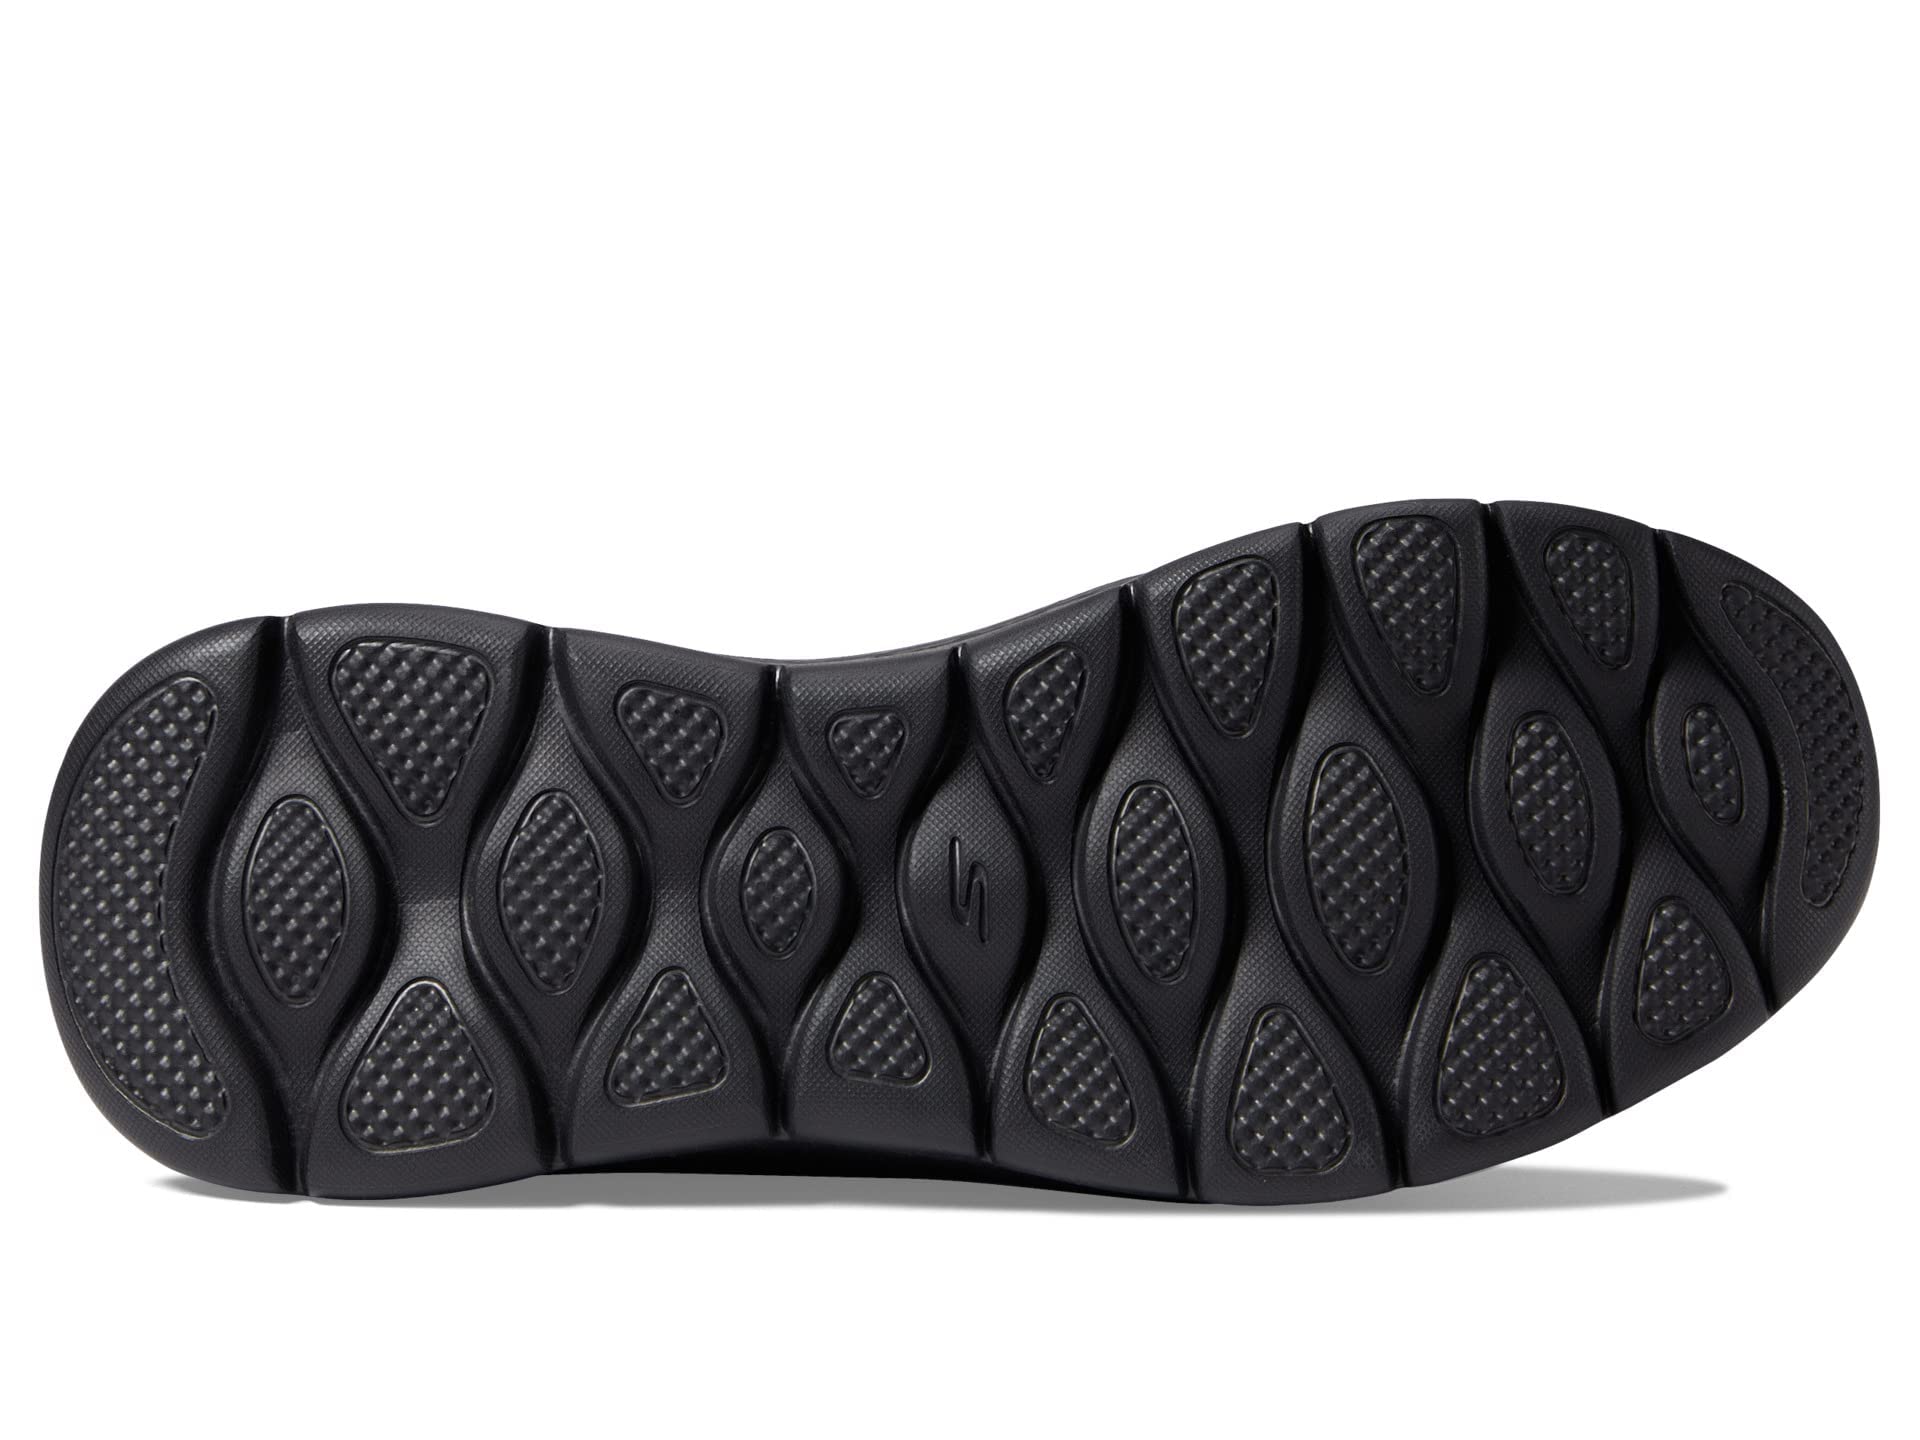 Skechers Men's Gowalk Flex Hands Free Slip-ins Athletic Slip-on Casual Walking Shoes Sneaker, Black, 12.5 X-Wide